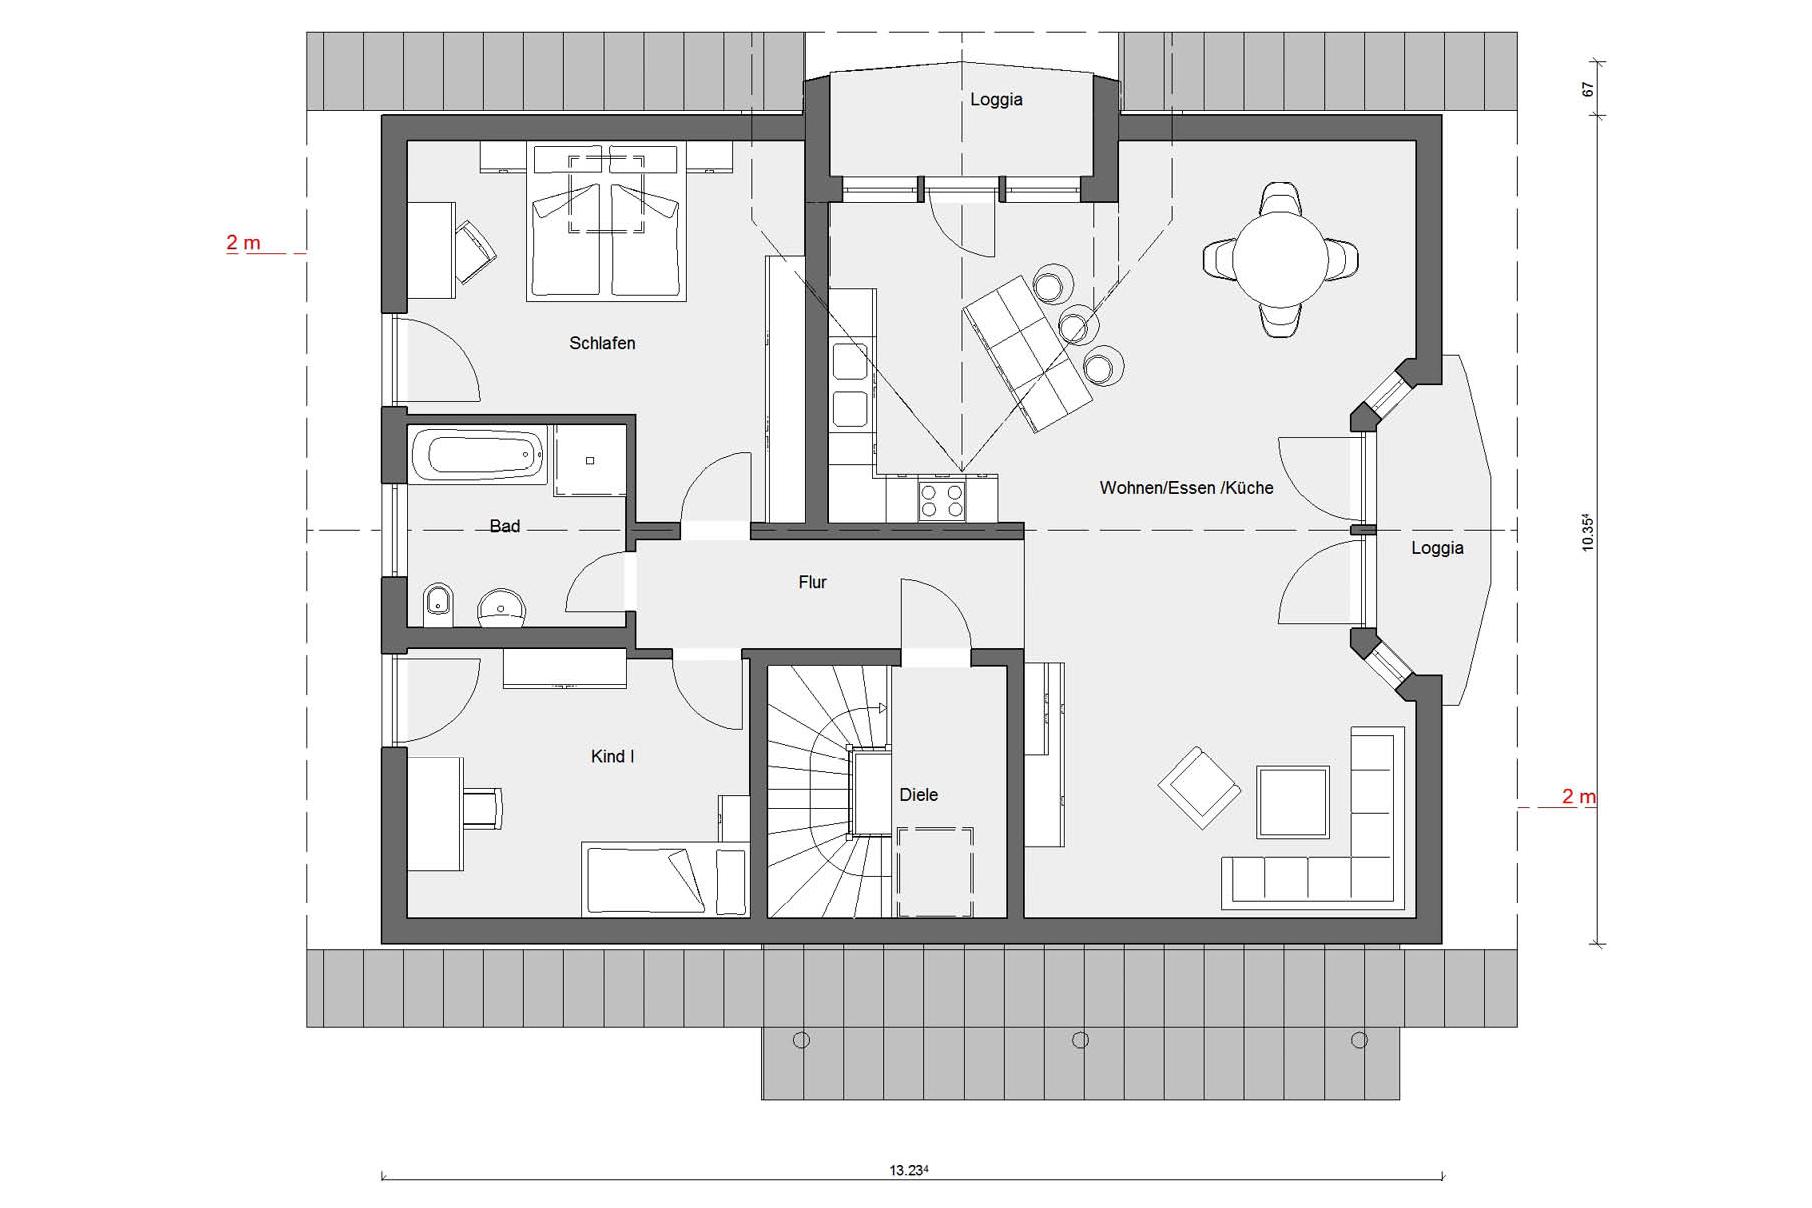 Plan d'étage grenier M 15-226.1 Maison avec appartement annexe